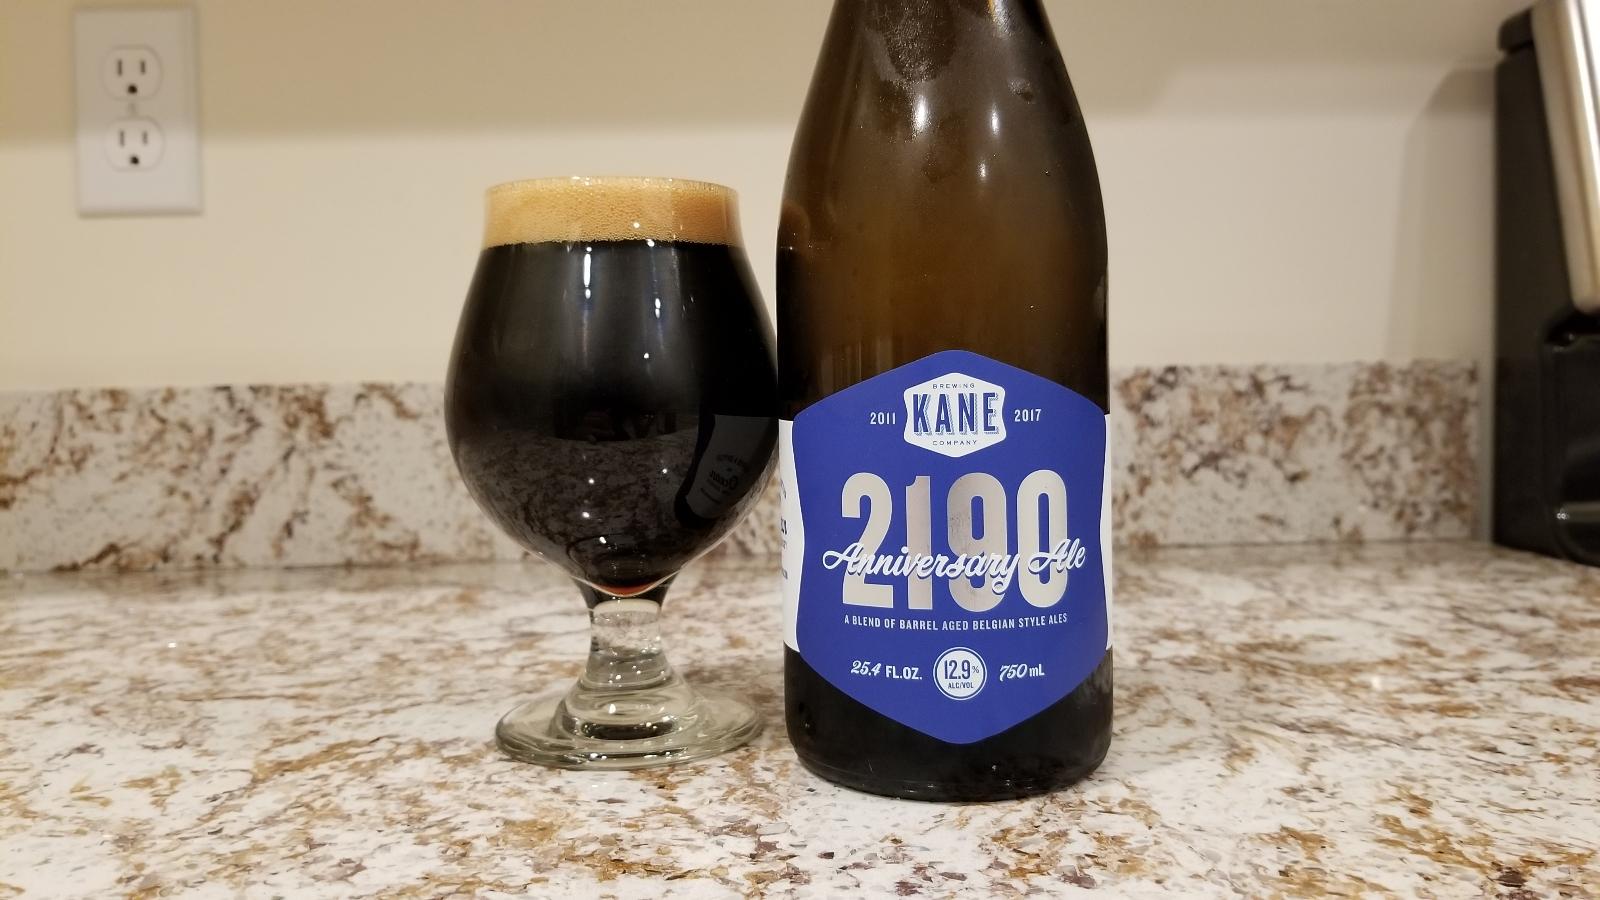 2190 Anniversary Ale